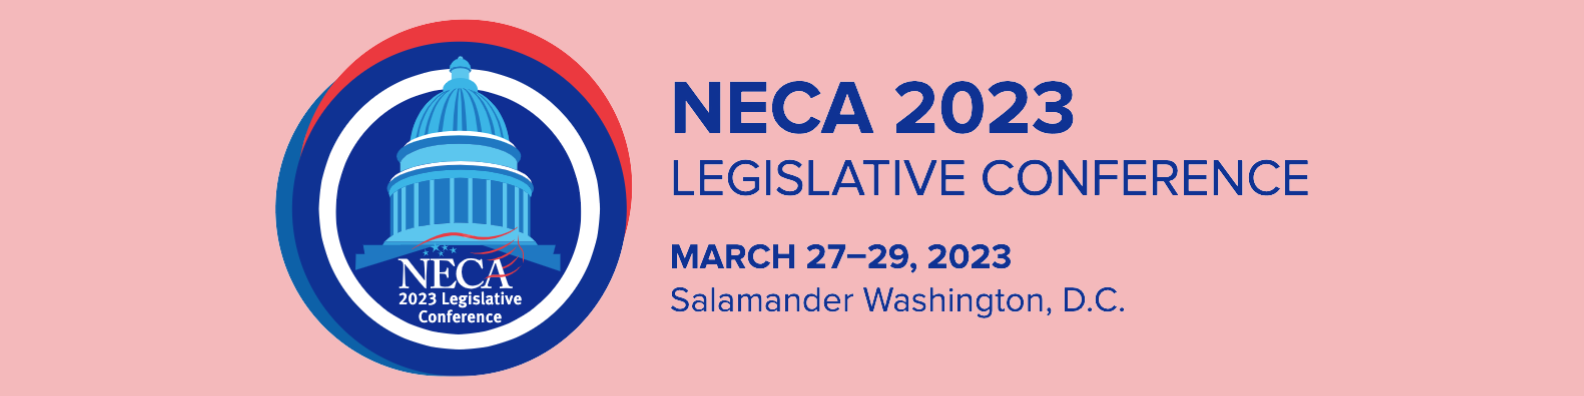 NECA Legislative Conference Banner